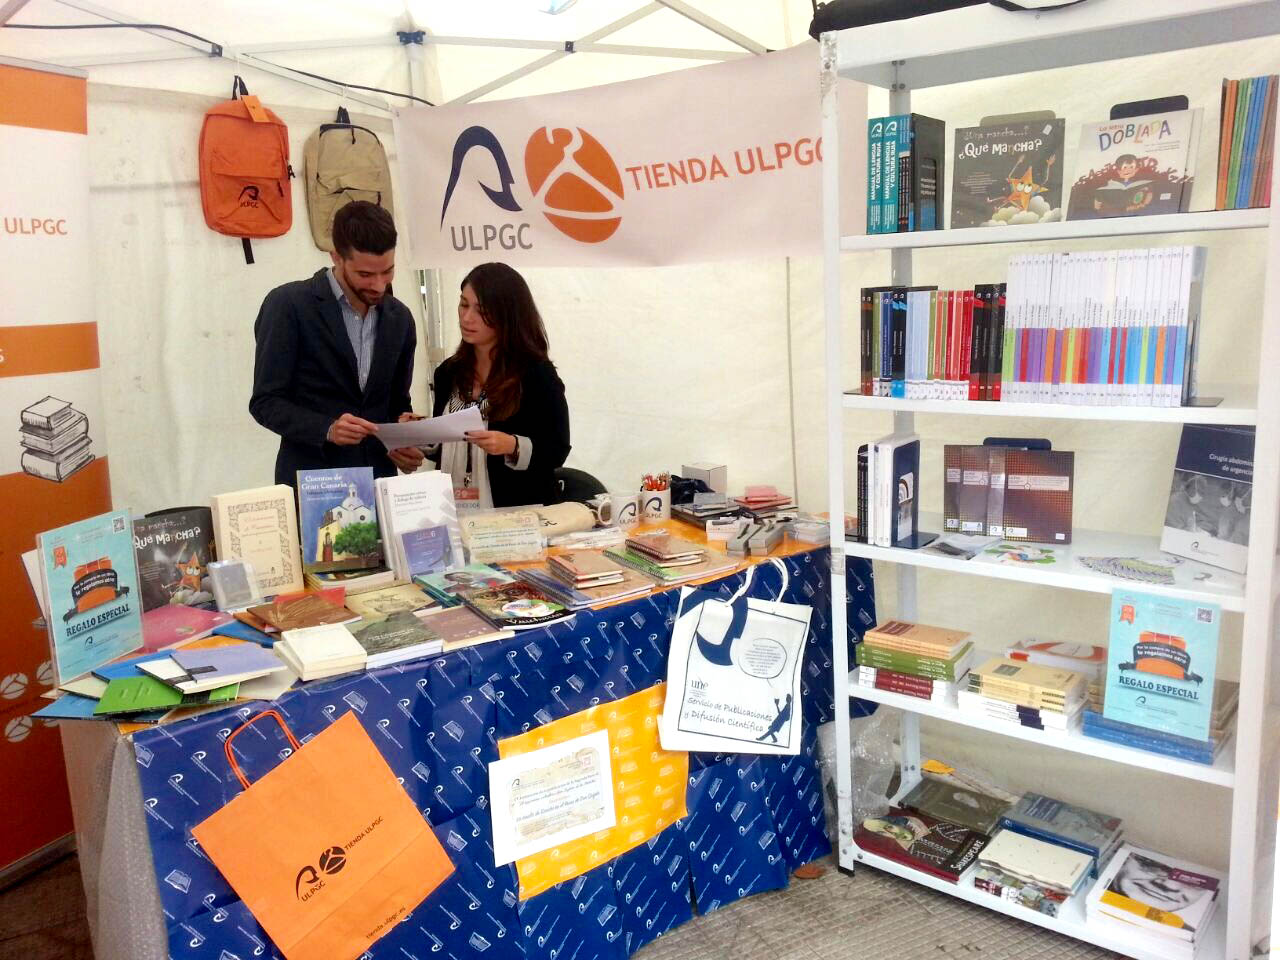 La Universidad de Las Palmas de Gran Canaria (ULPGC) apoyó la XXVII edición de la Feria del Libro de San Telmo